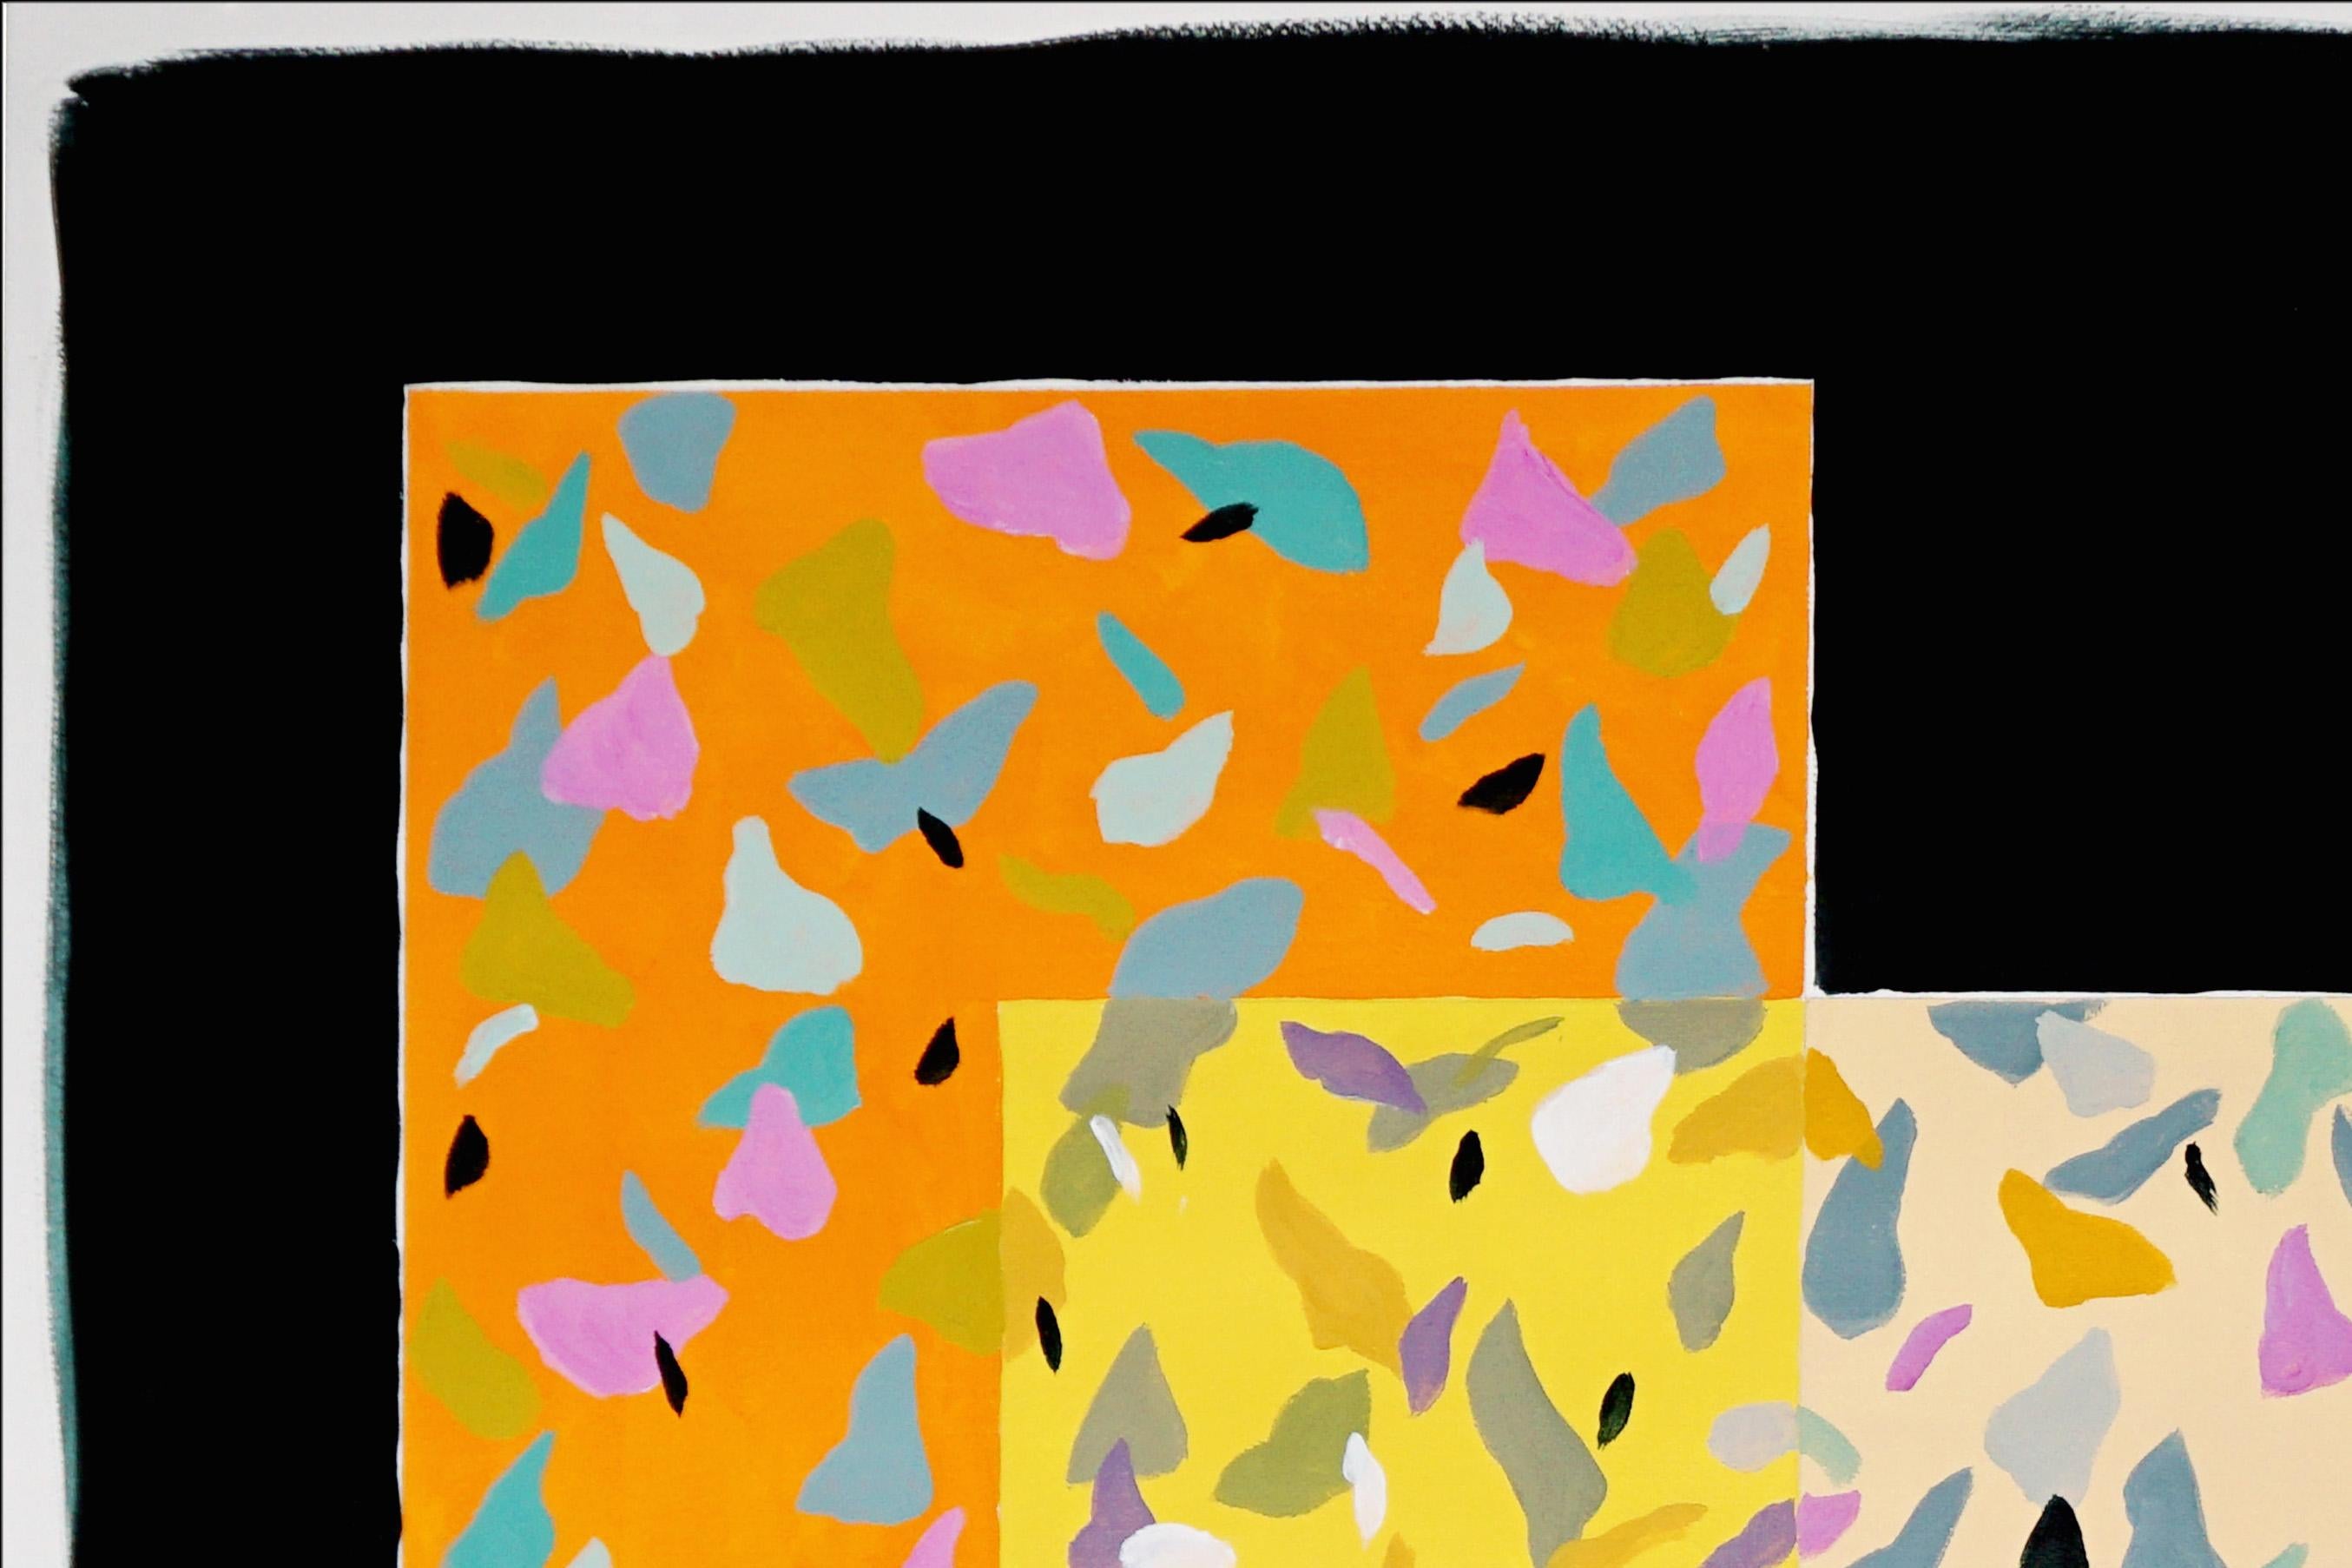 Double Vision Fliesen auf schwarzem, orangefarbenem und cremefarbenem Terrazzo-Muster in Vivid-Tönen (Geometrische Abstraktion), Painting, von Natalia Roman